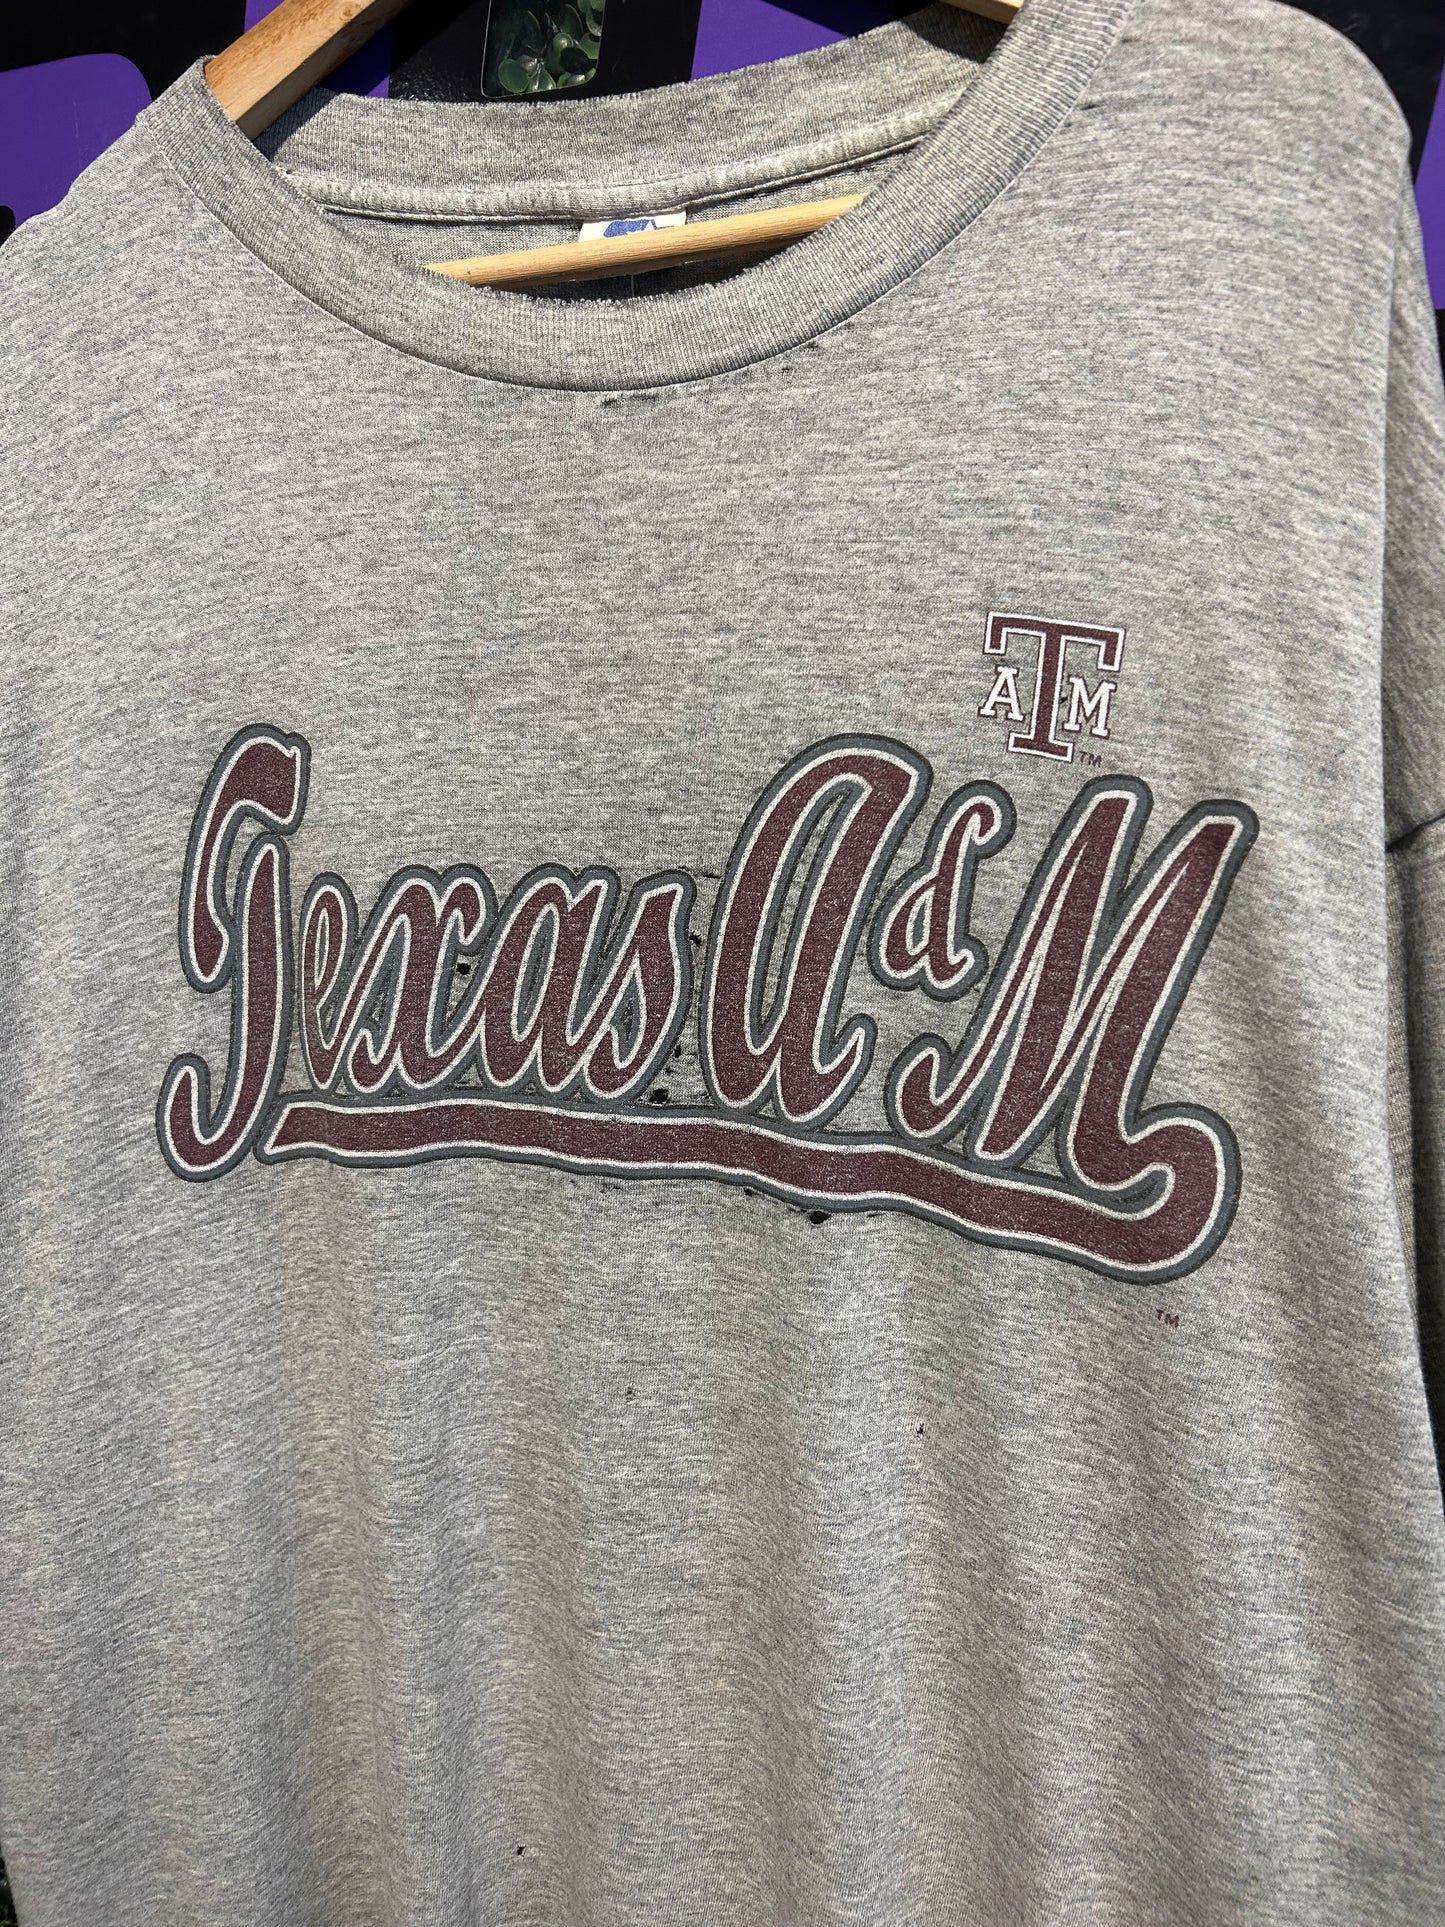 90s Texas A&M Starter T-Shirt. Size XL